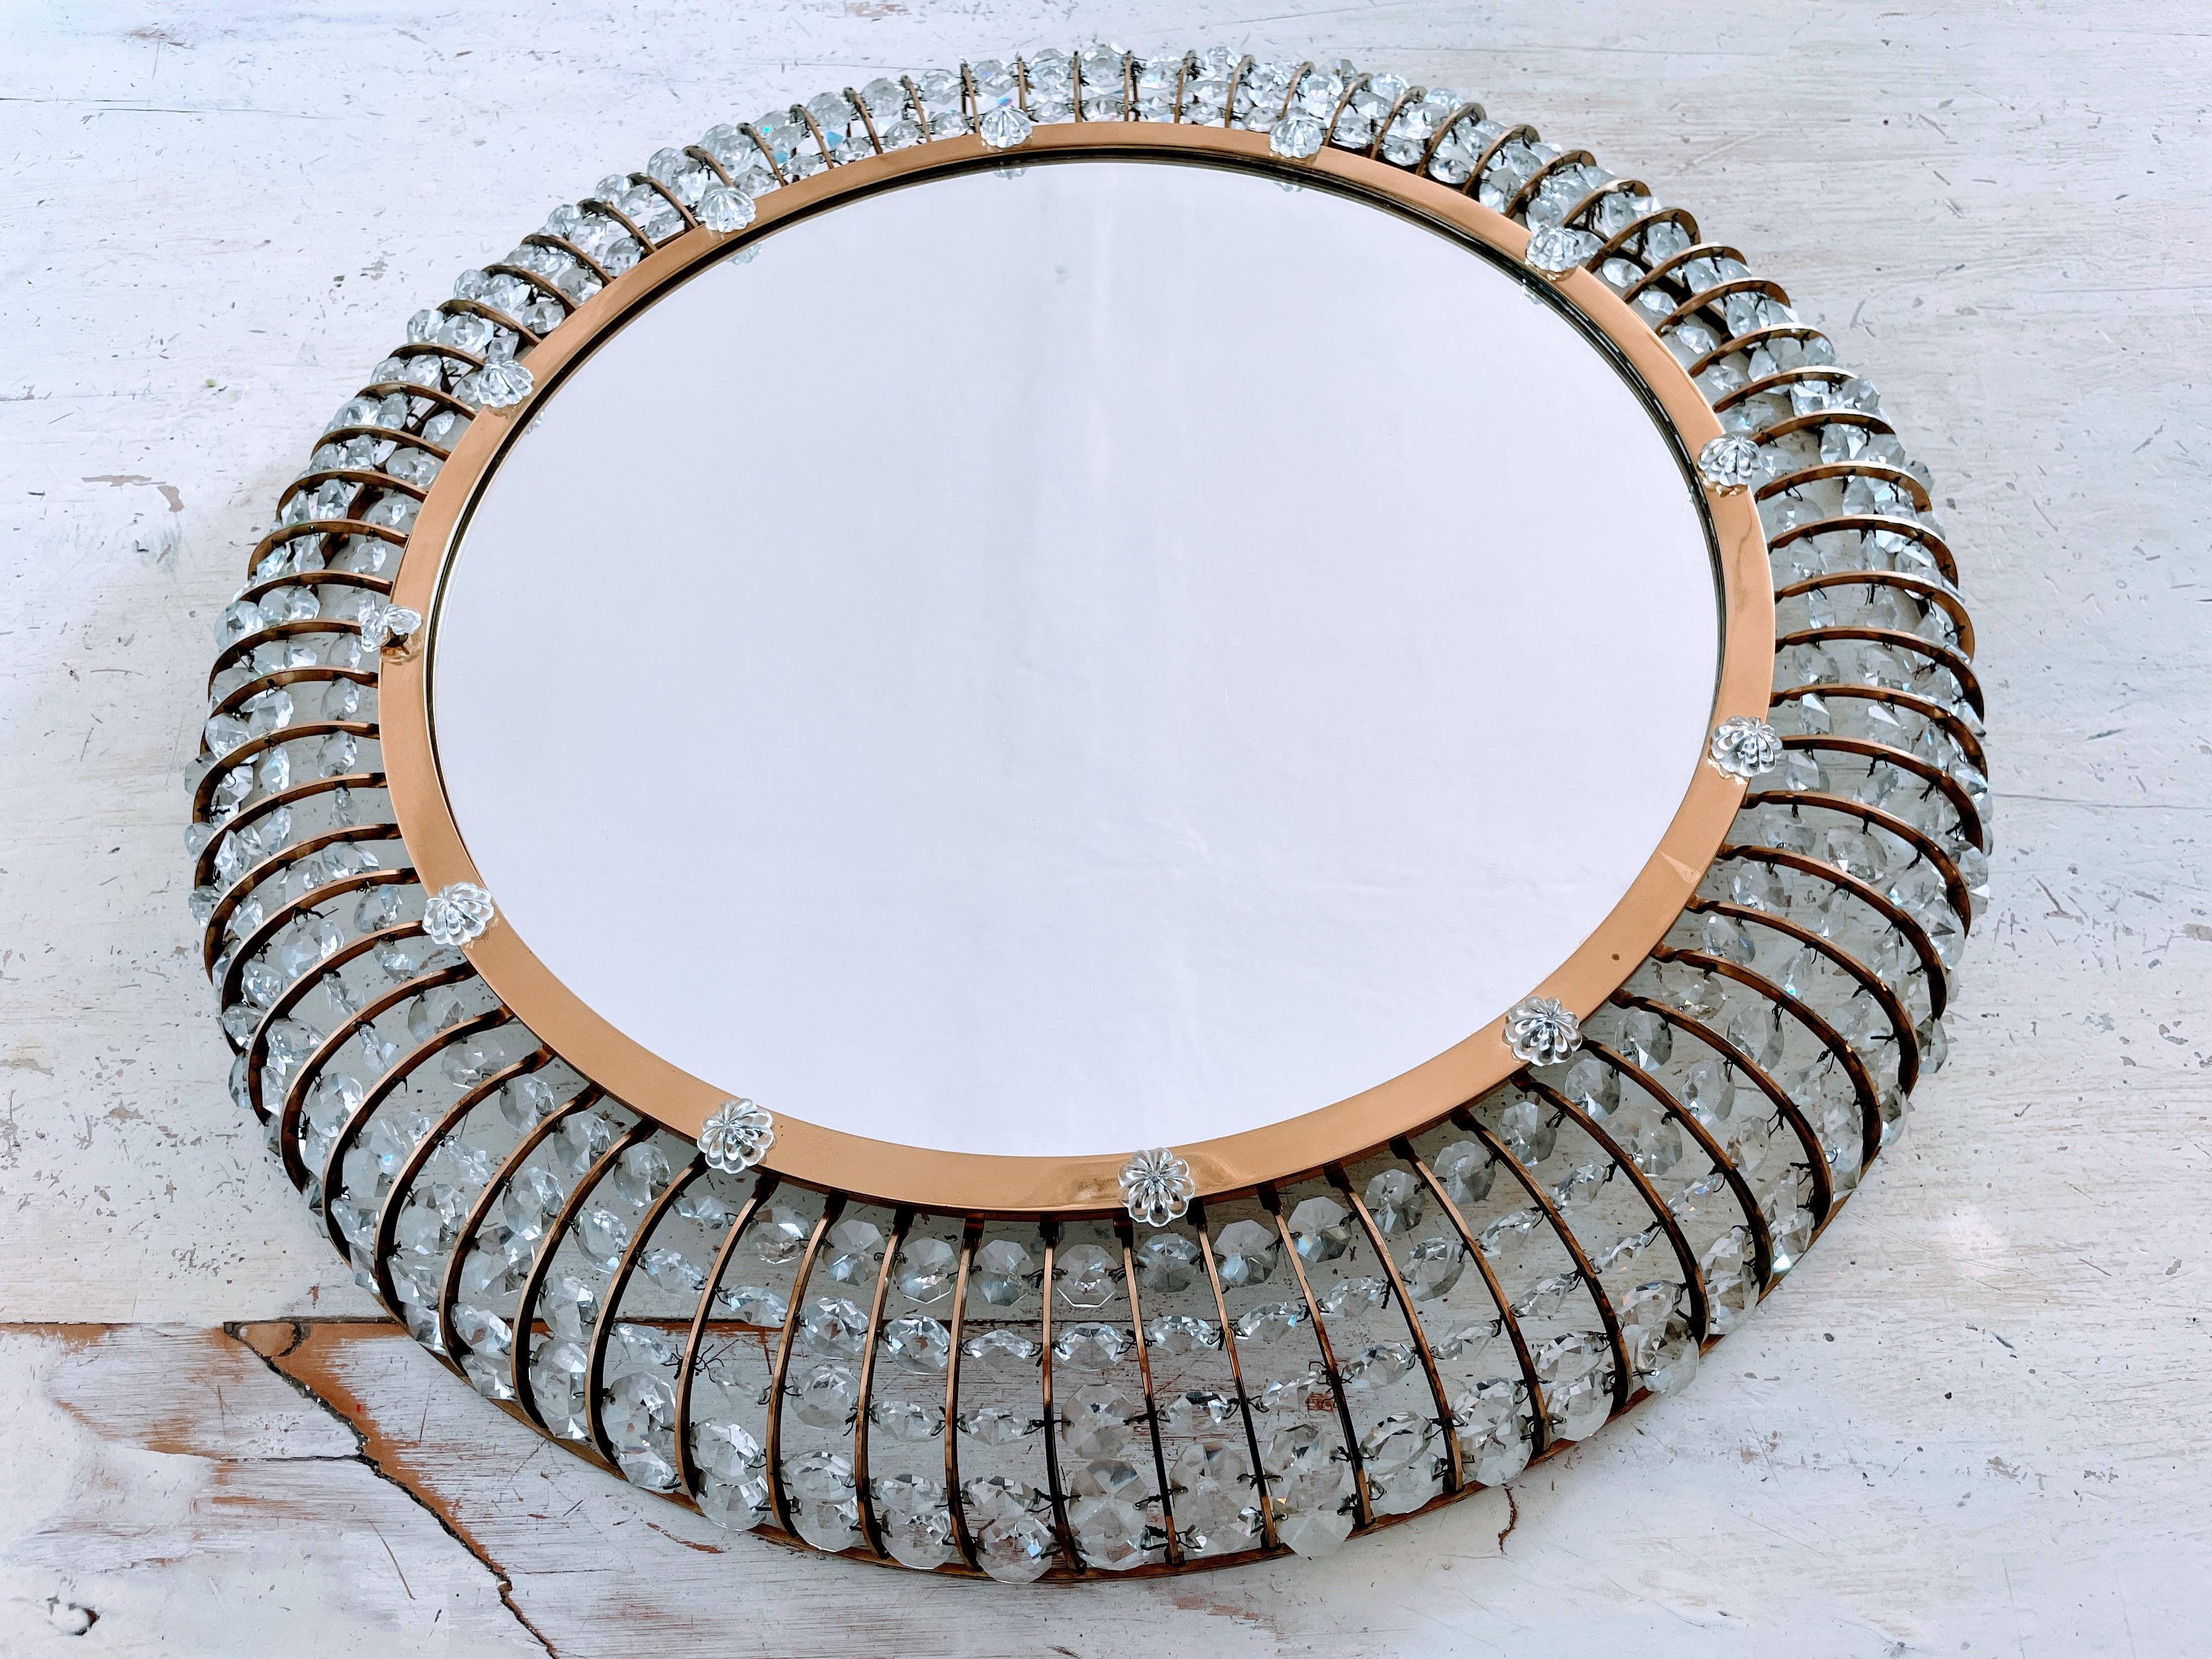 Wir präsentieren den österreichischen Spiegel im fesselnden Stil von Emil Stejnar - ein Meisterwerk aus der Mitte des Jahrhunderts, das Eleganz und Vintage-Charme nahtlos miteinander verbindet. Dieser runde Glasspiegel mit seiner ausgeprägten